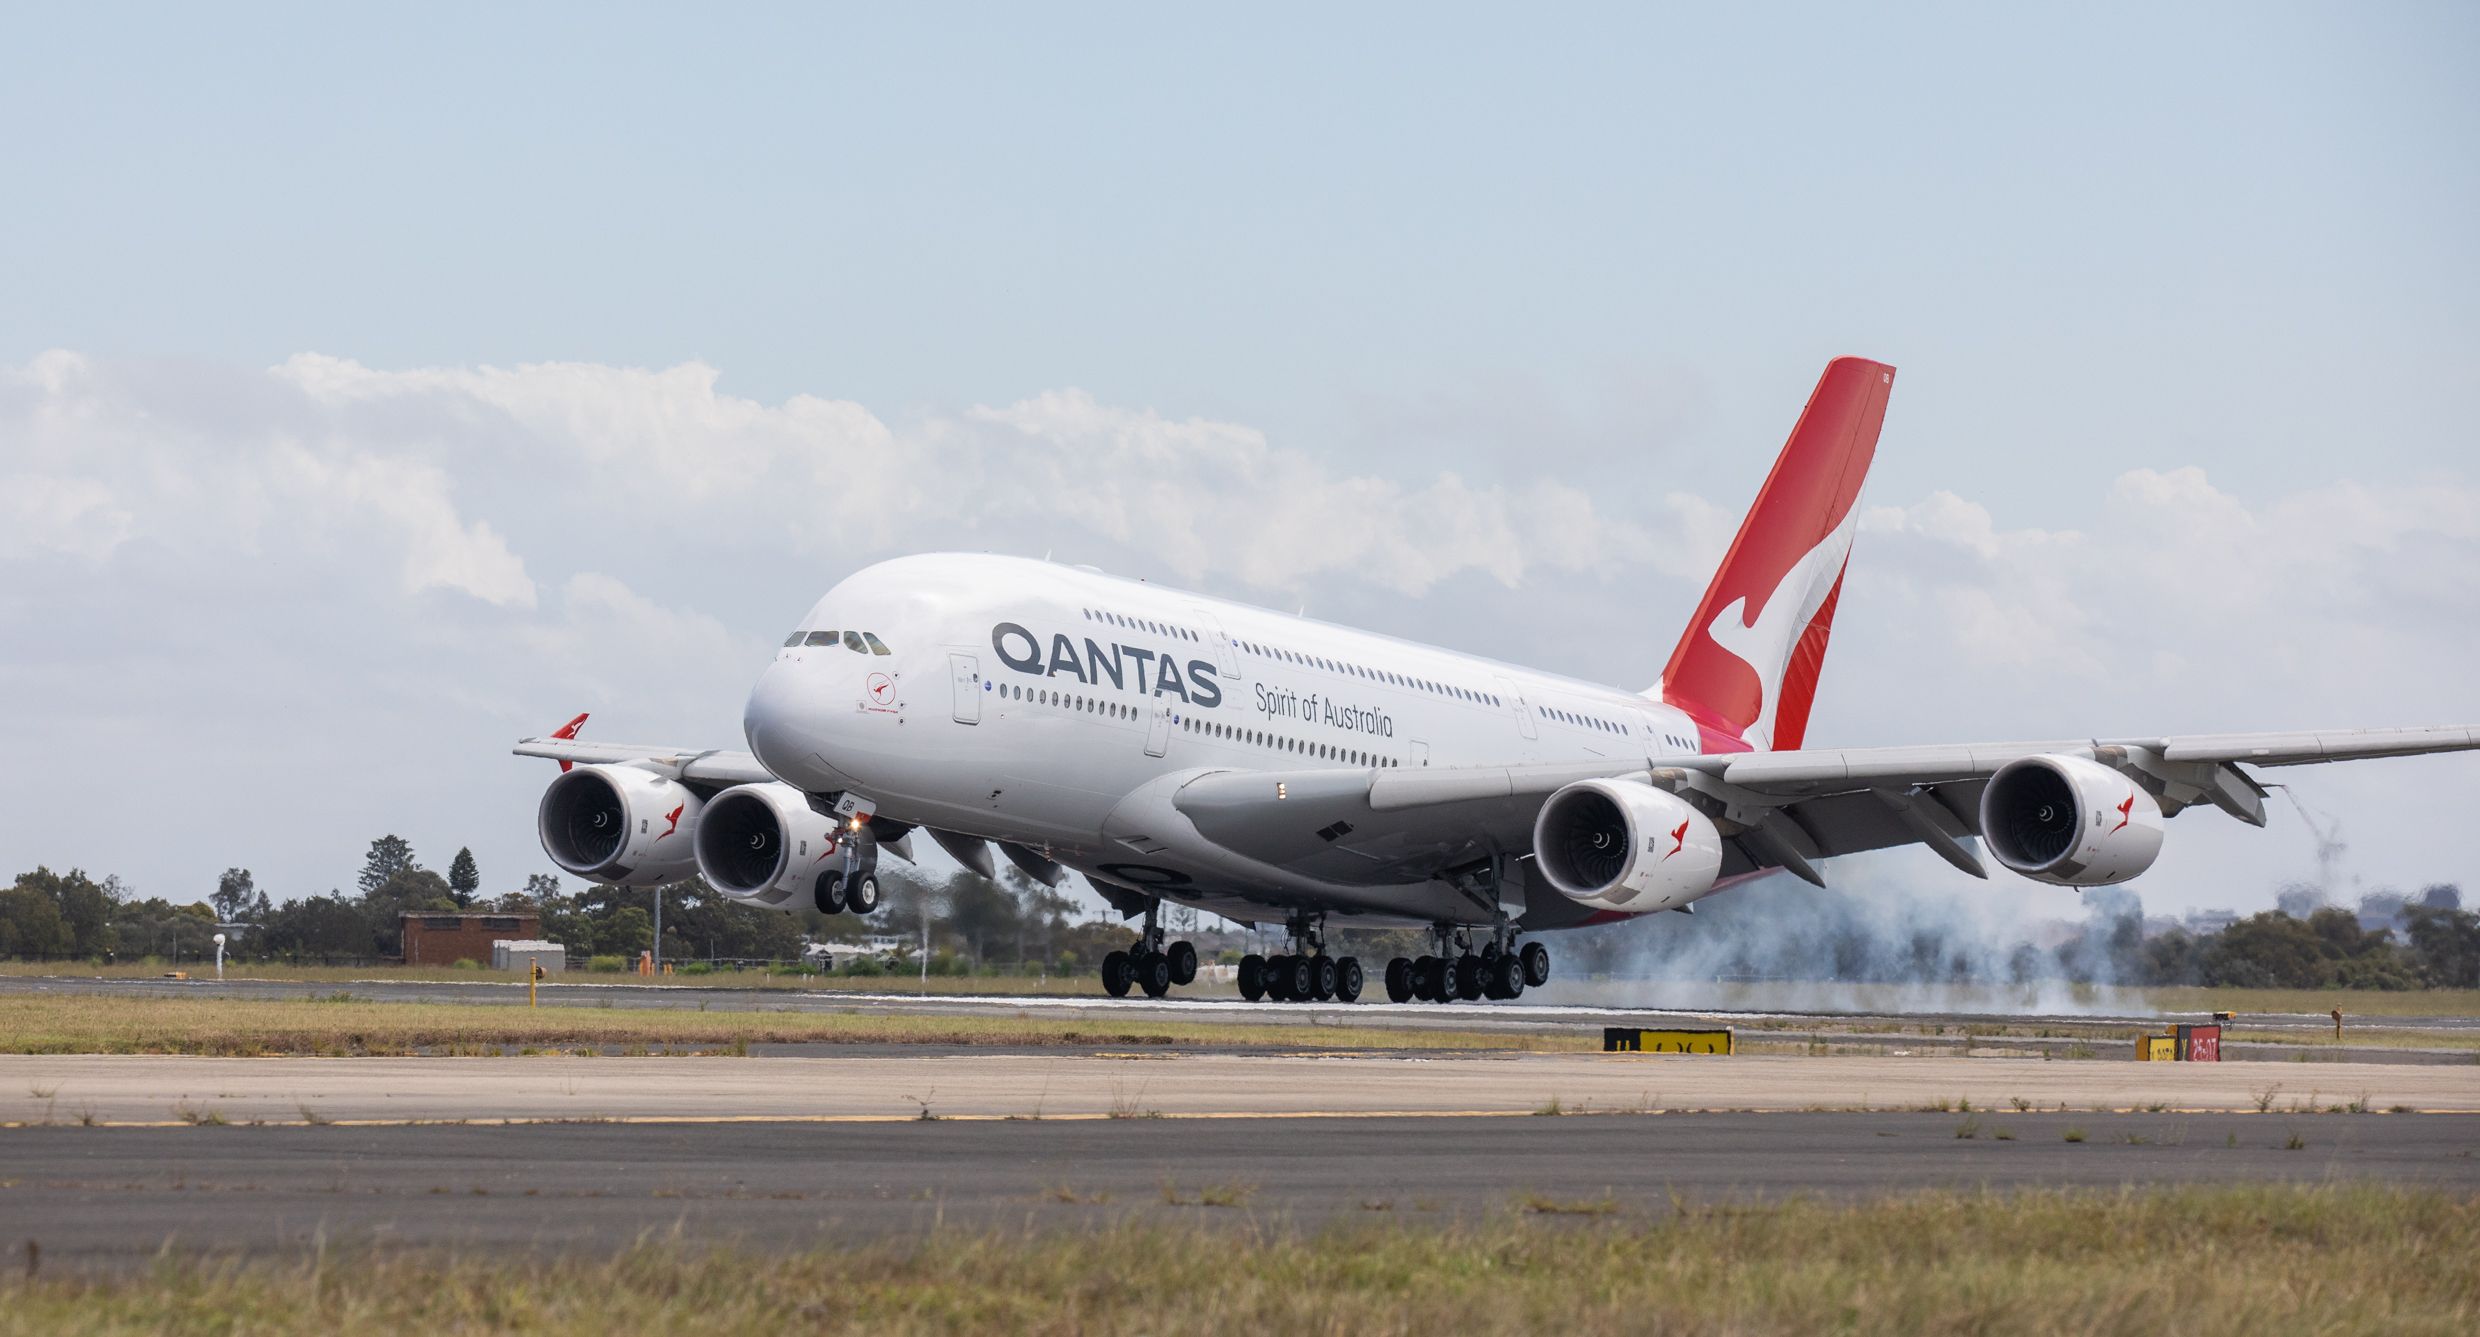 A Qantas Airbus A380 landing on a runway.